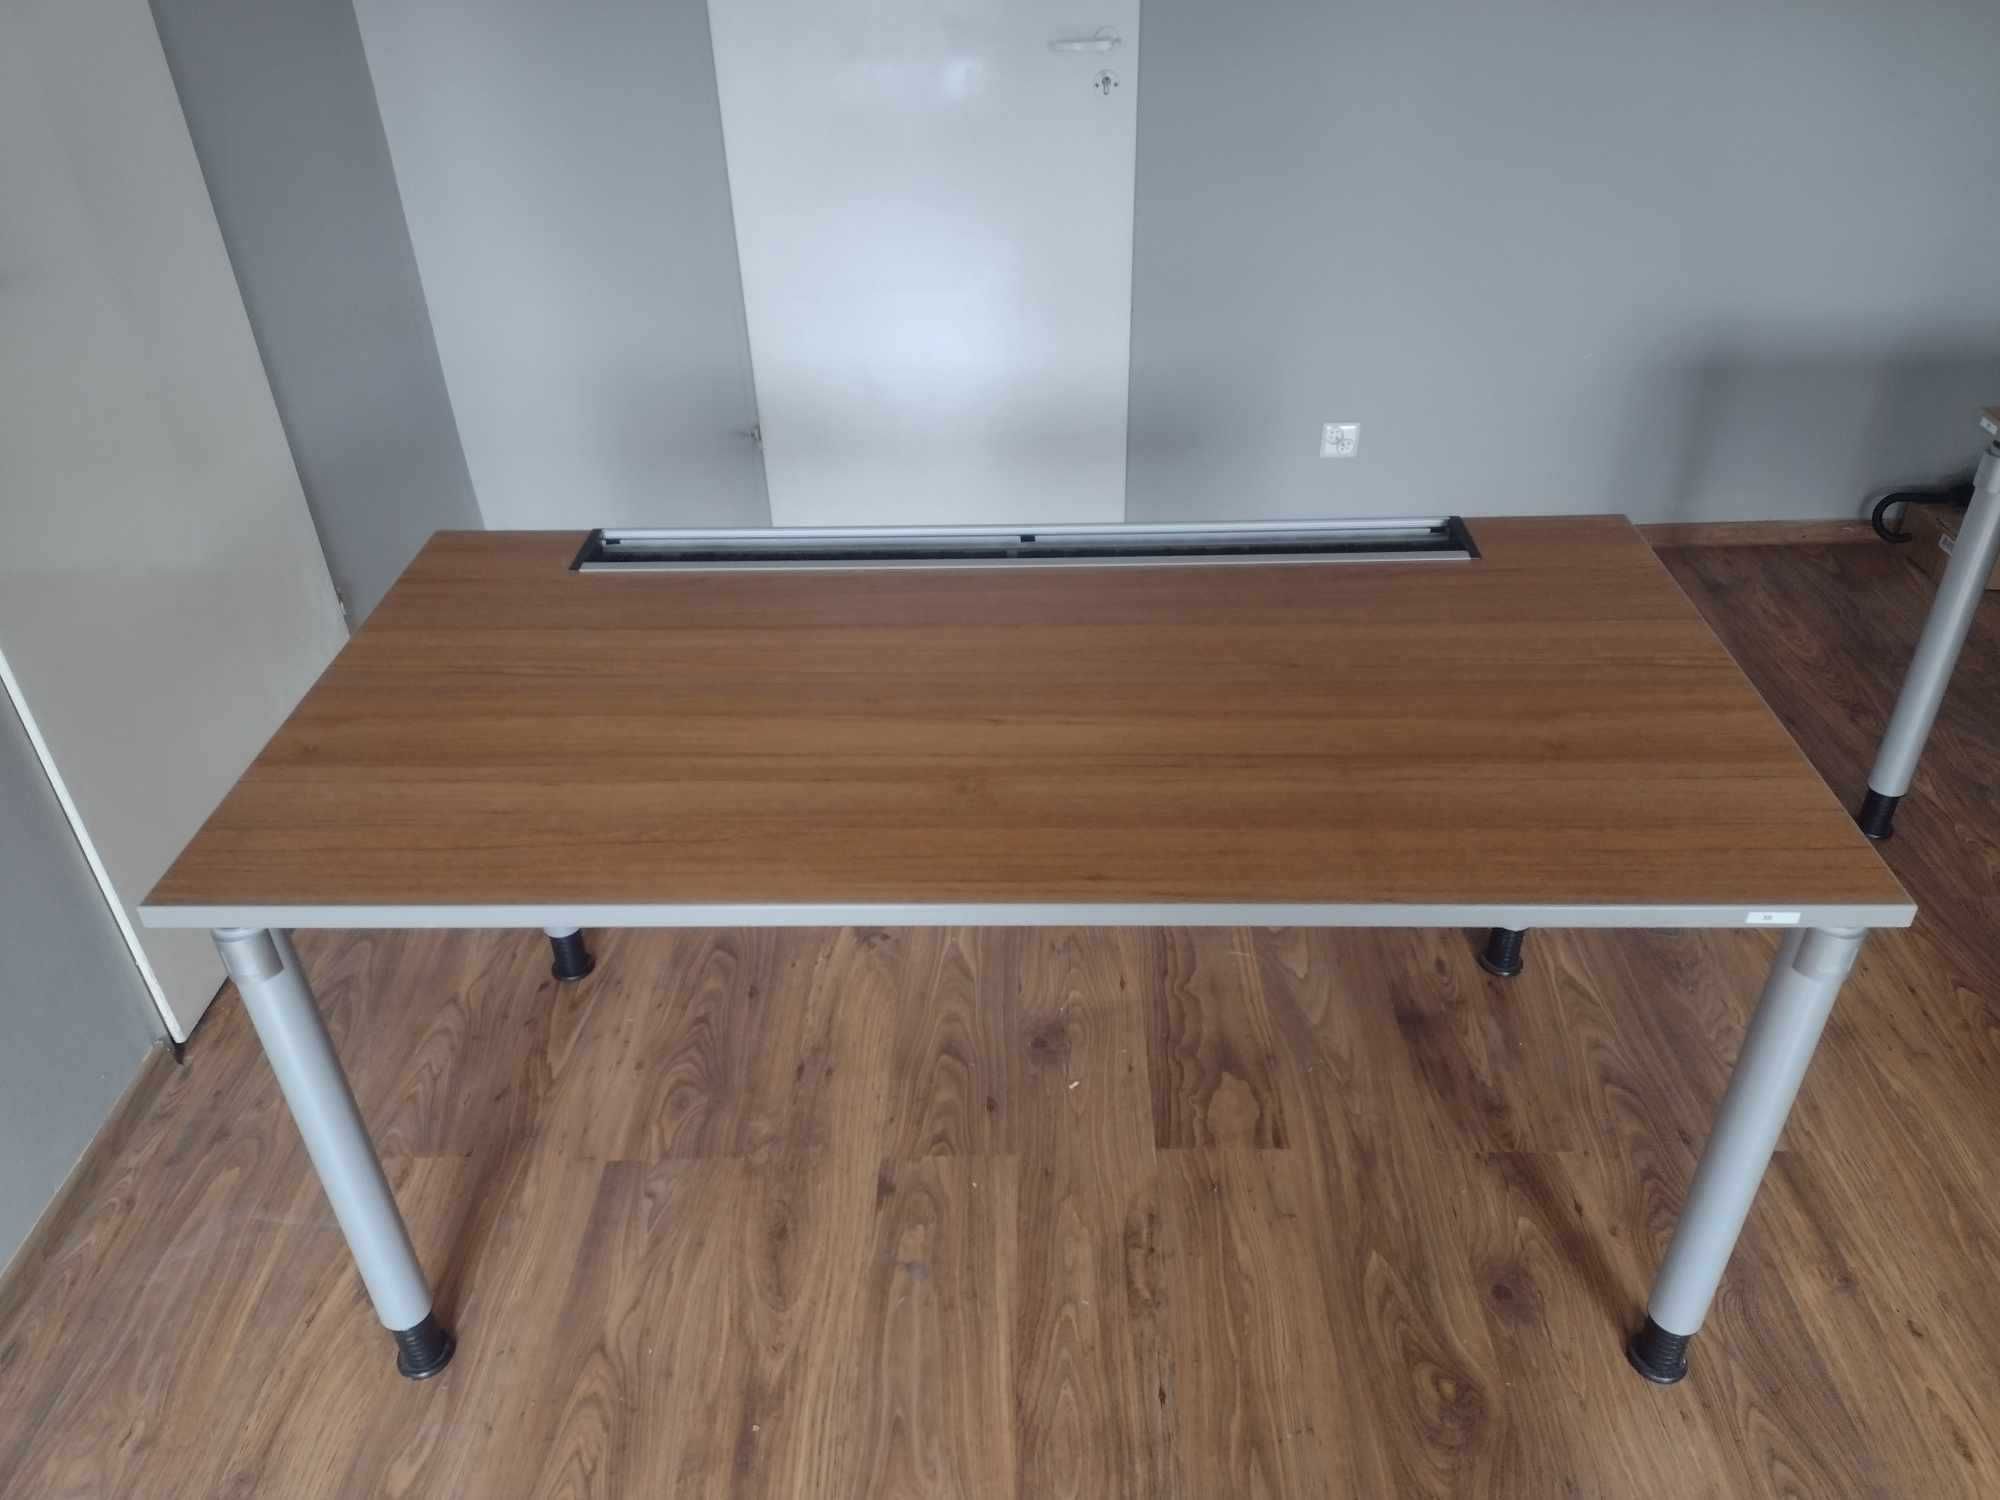 4 biurka szerokie, używane